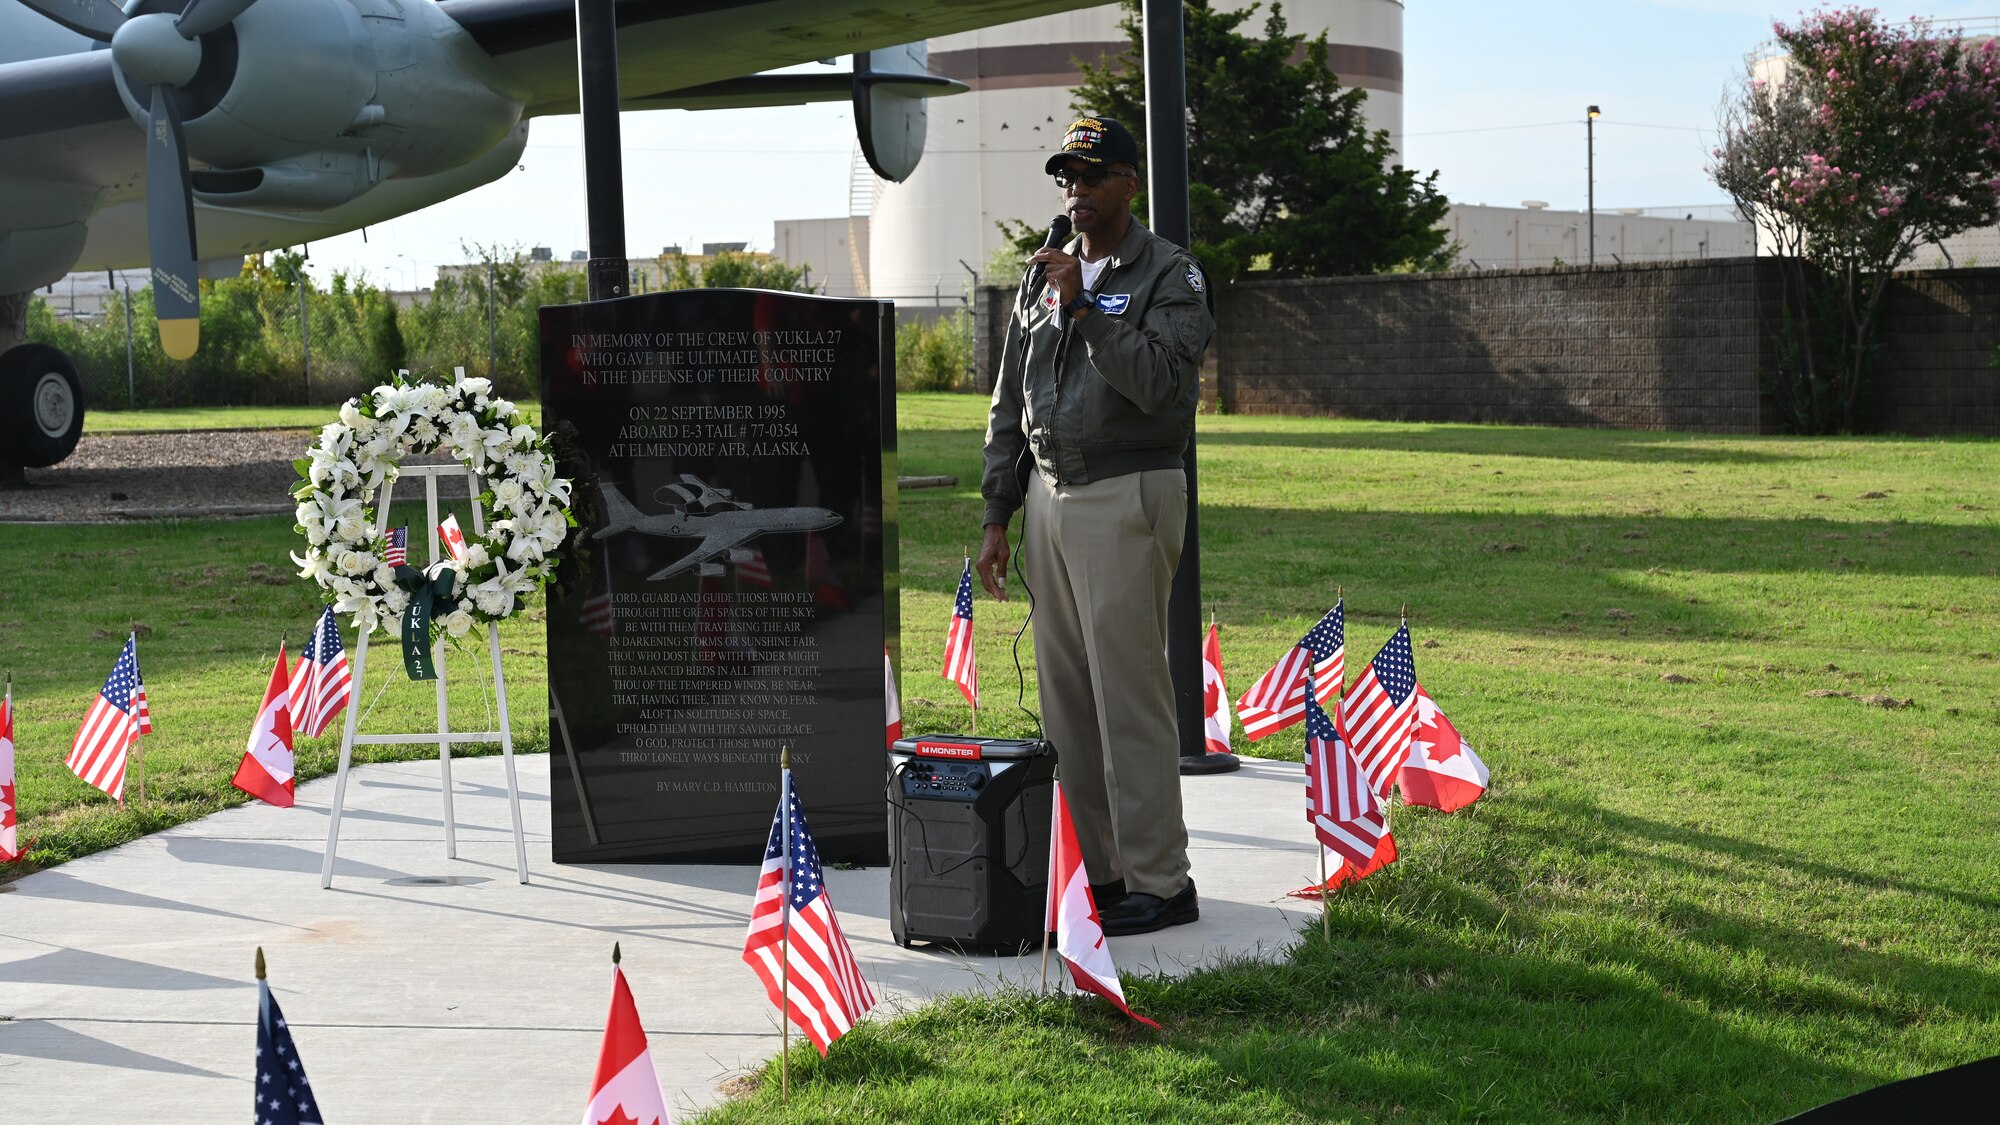 speaker stands in front of memorial